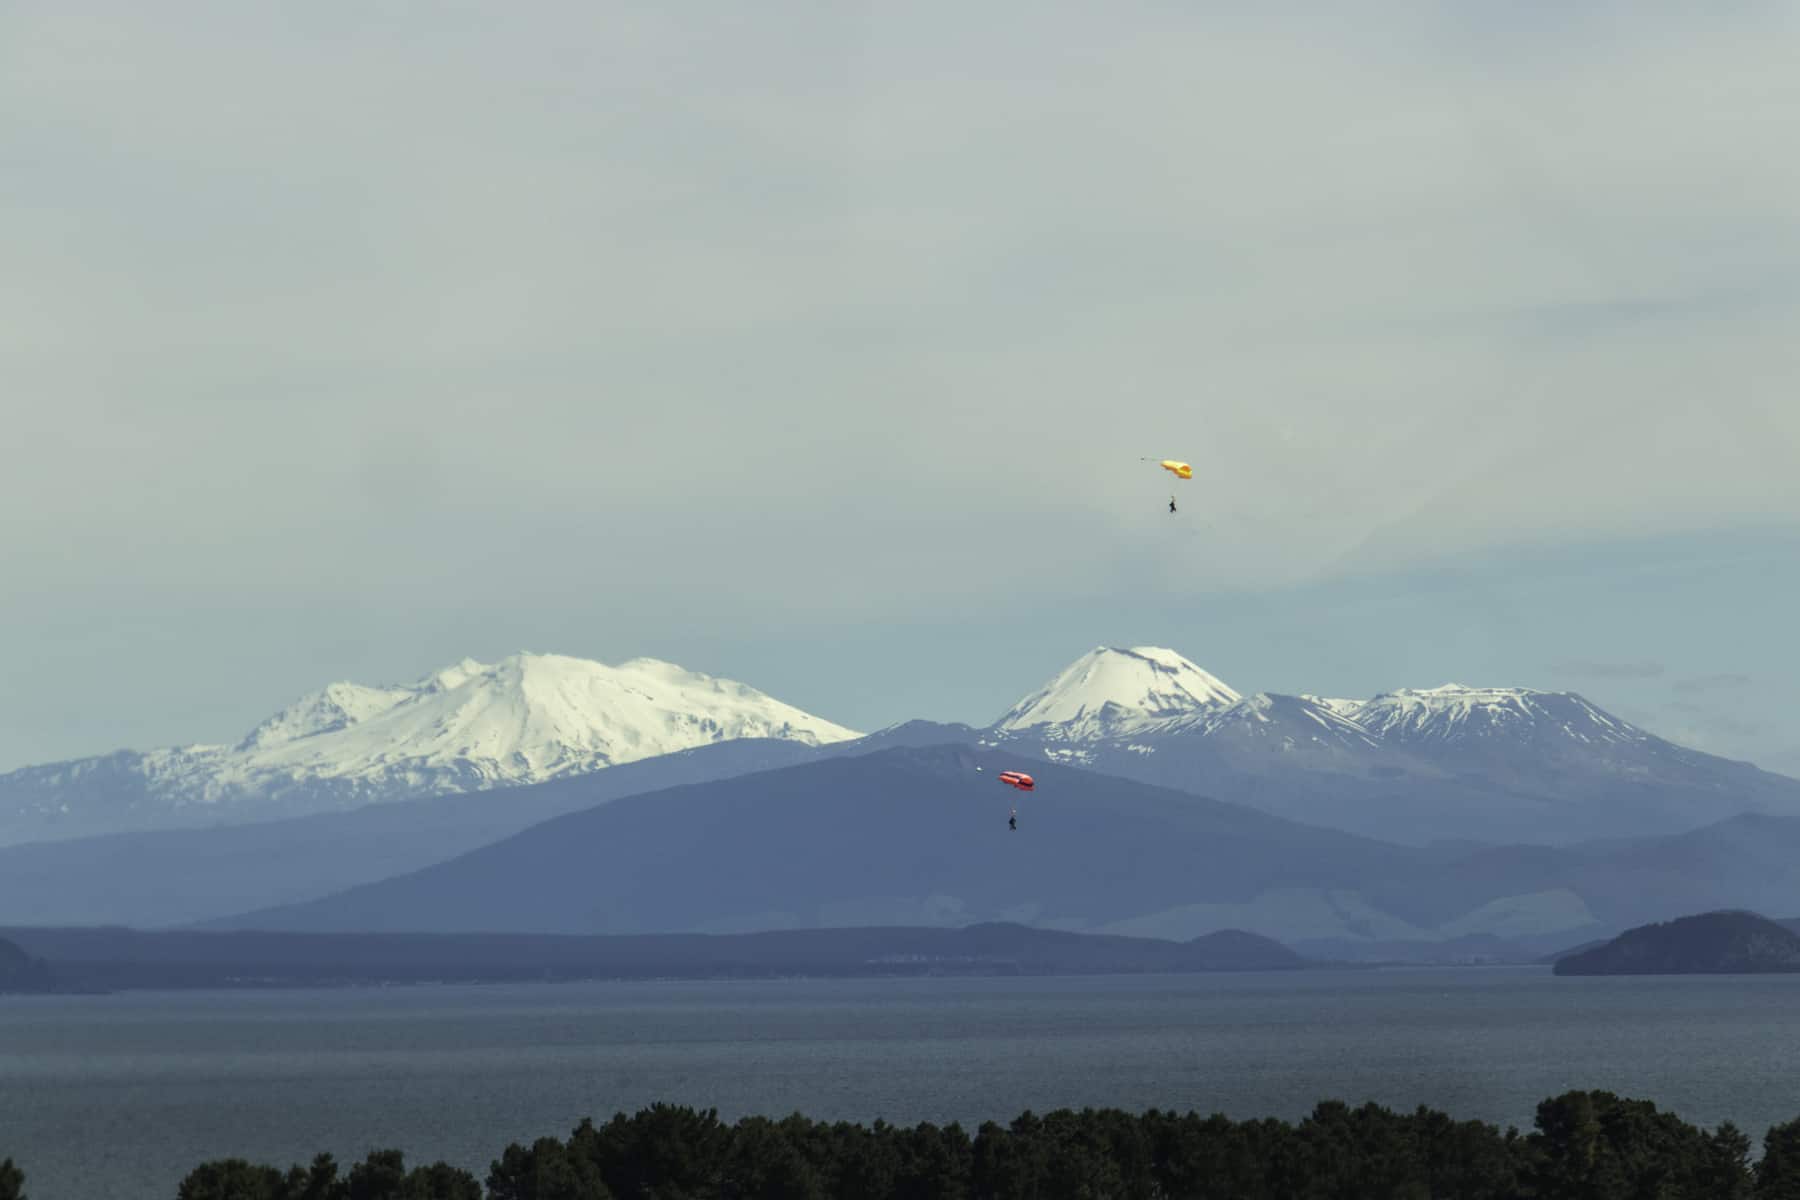 Atterrissage en parachute avec le paysage volcanique de Tongariro